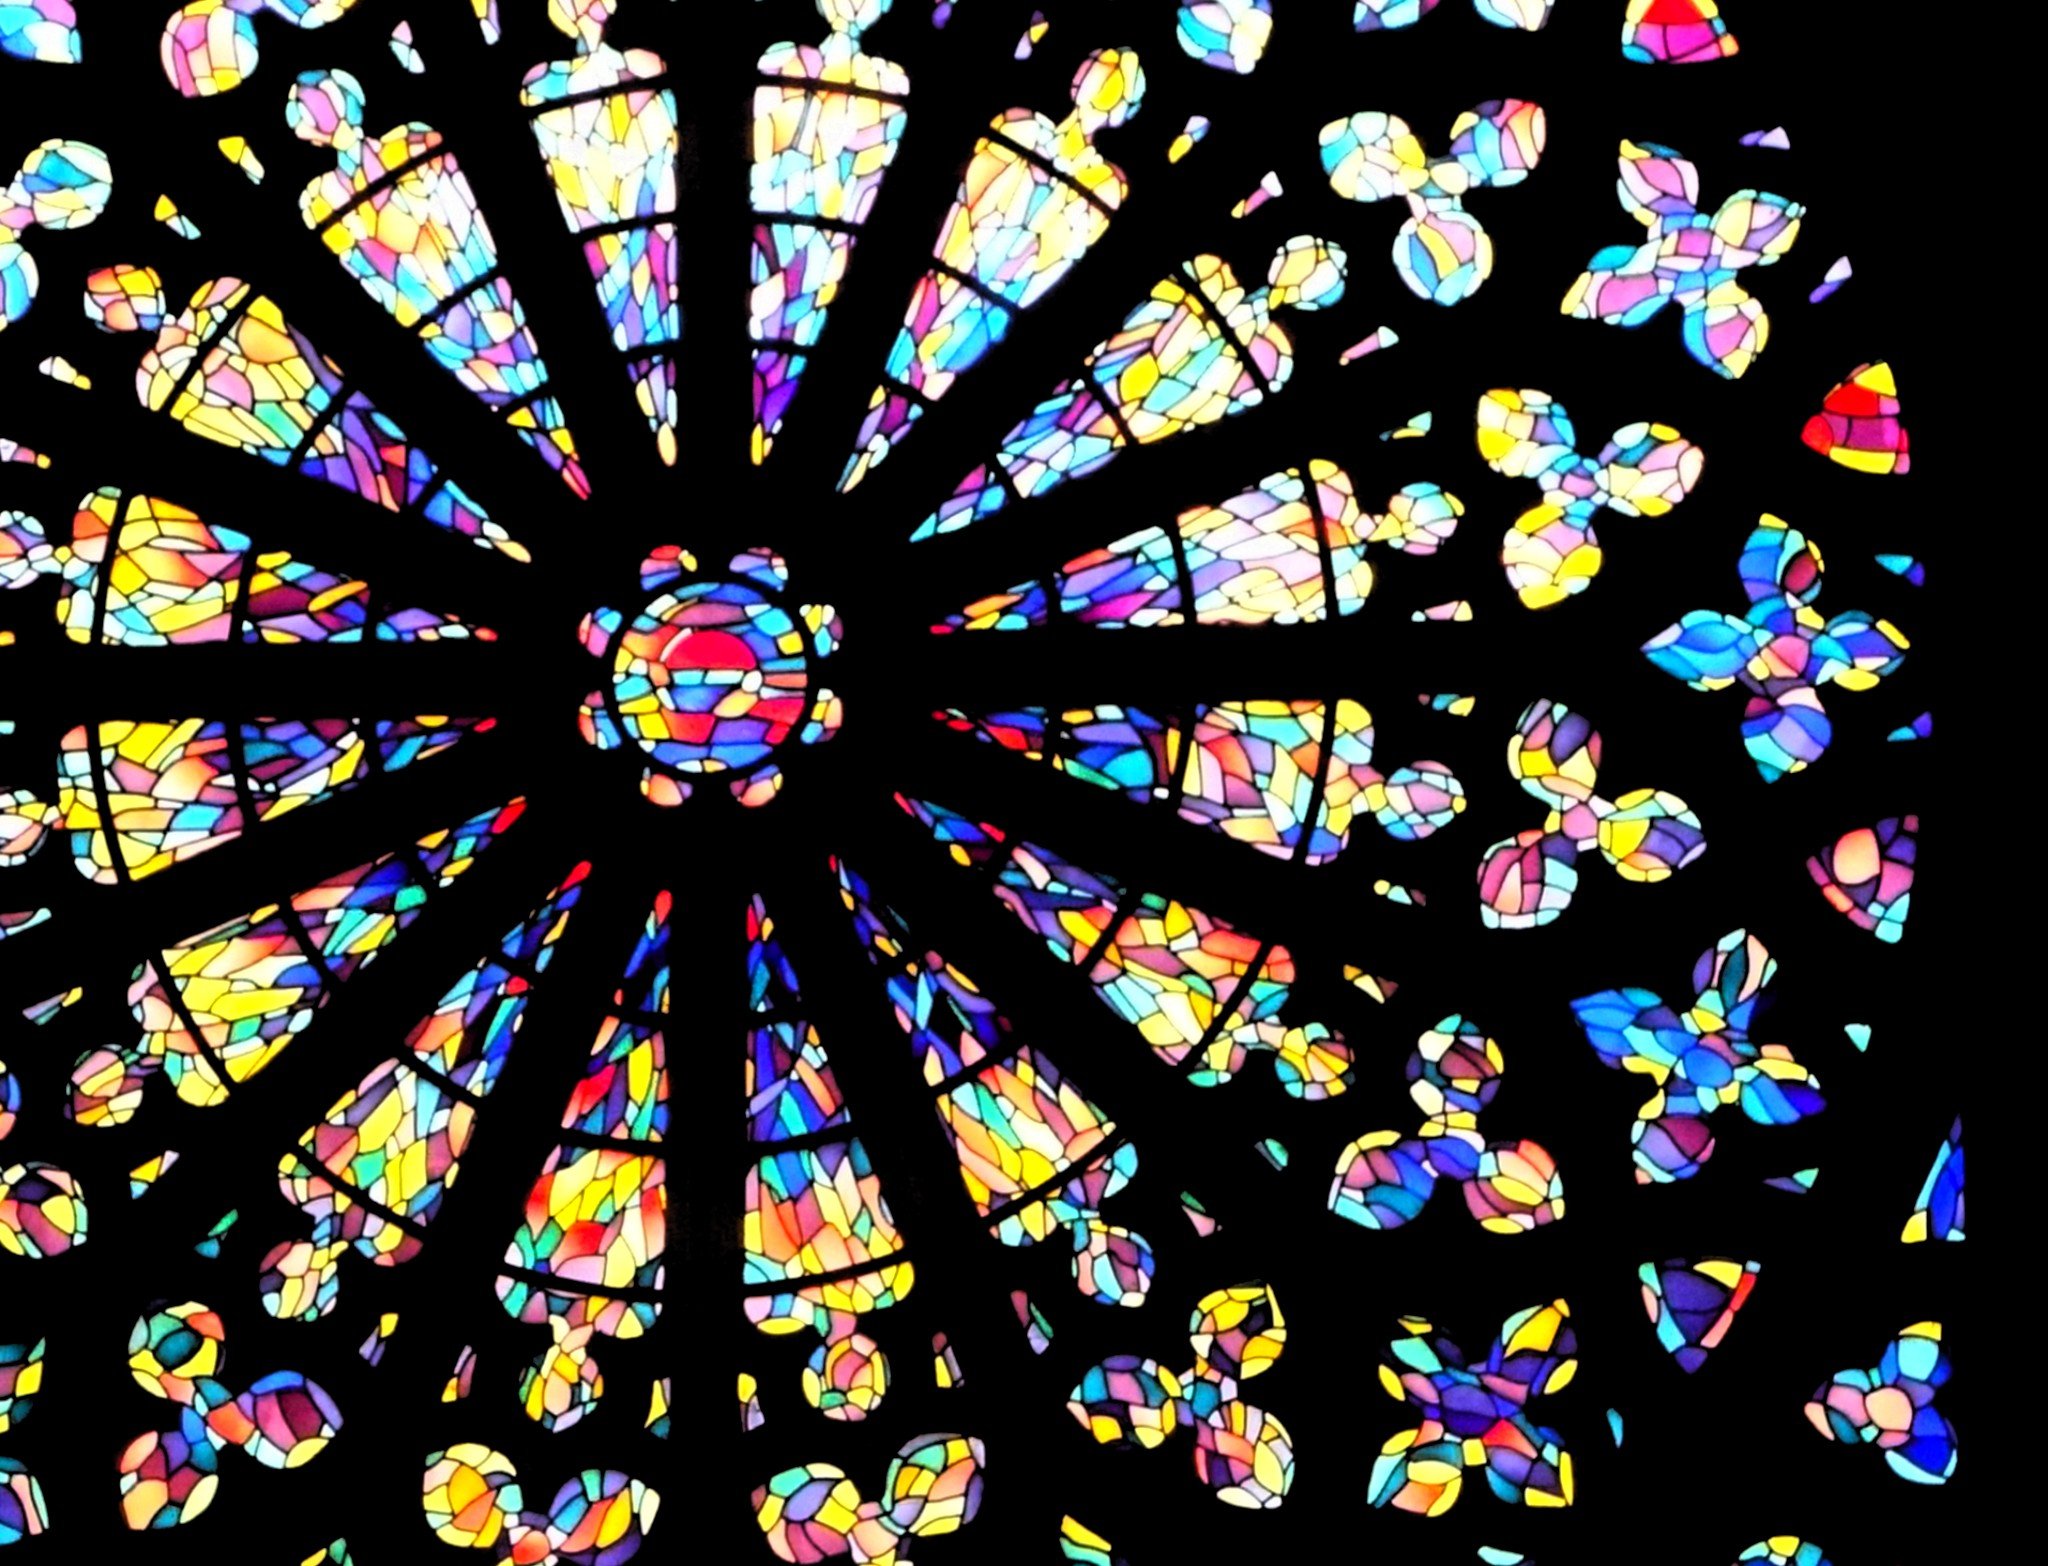 Rosace de la cathédrale de Saint-Malo (travail personnel, CC-BY-SA)